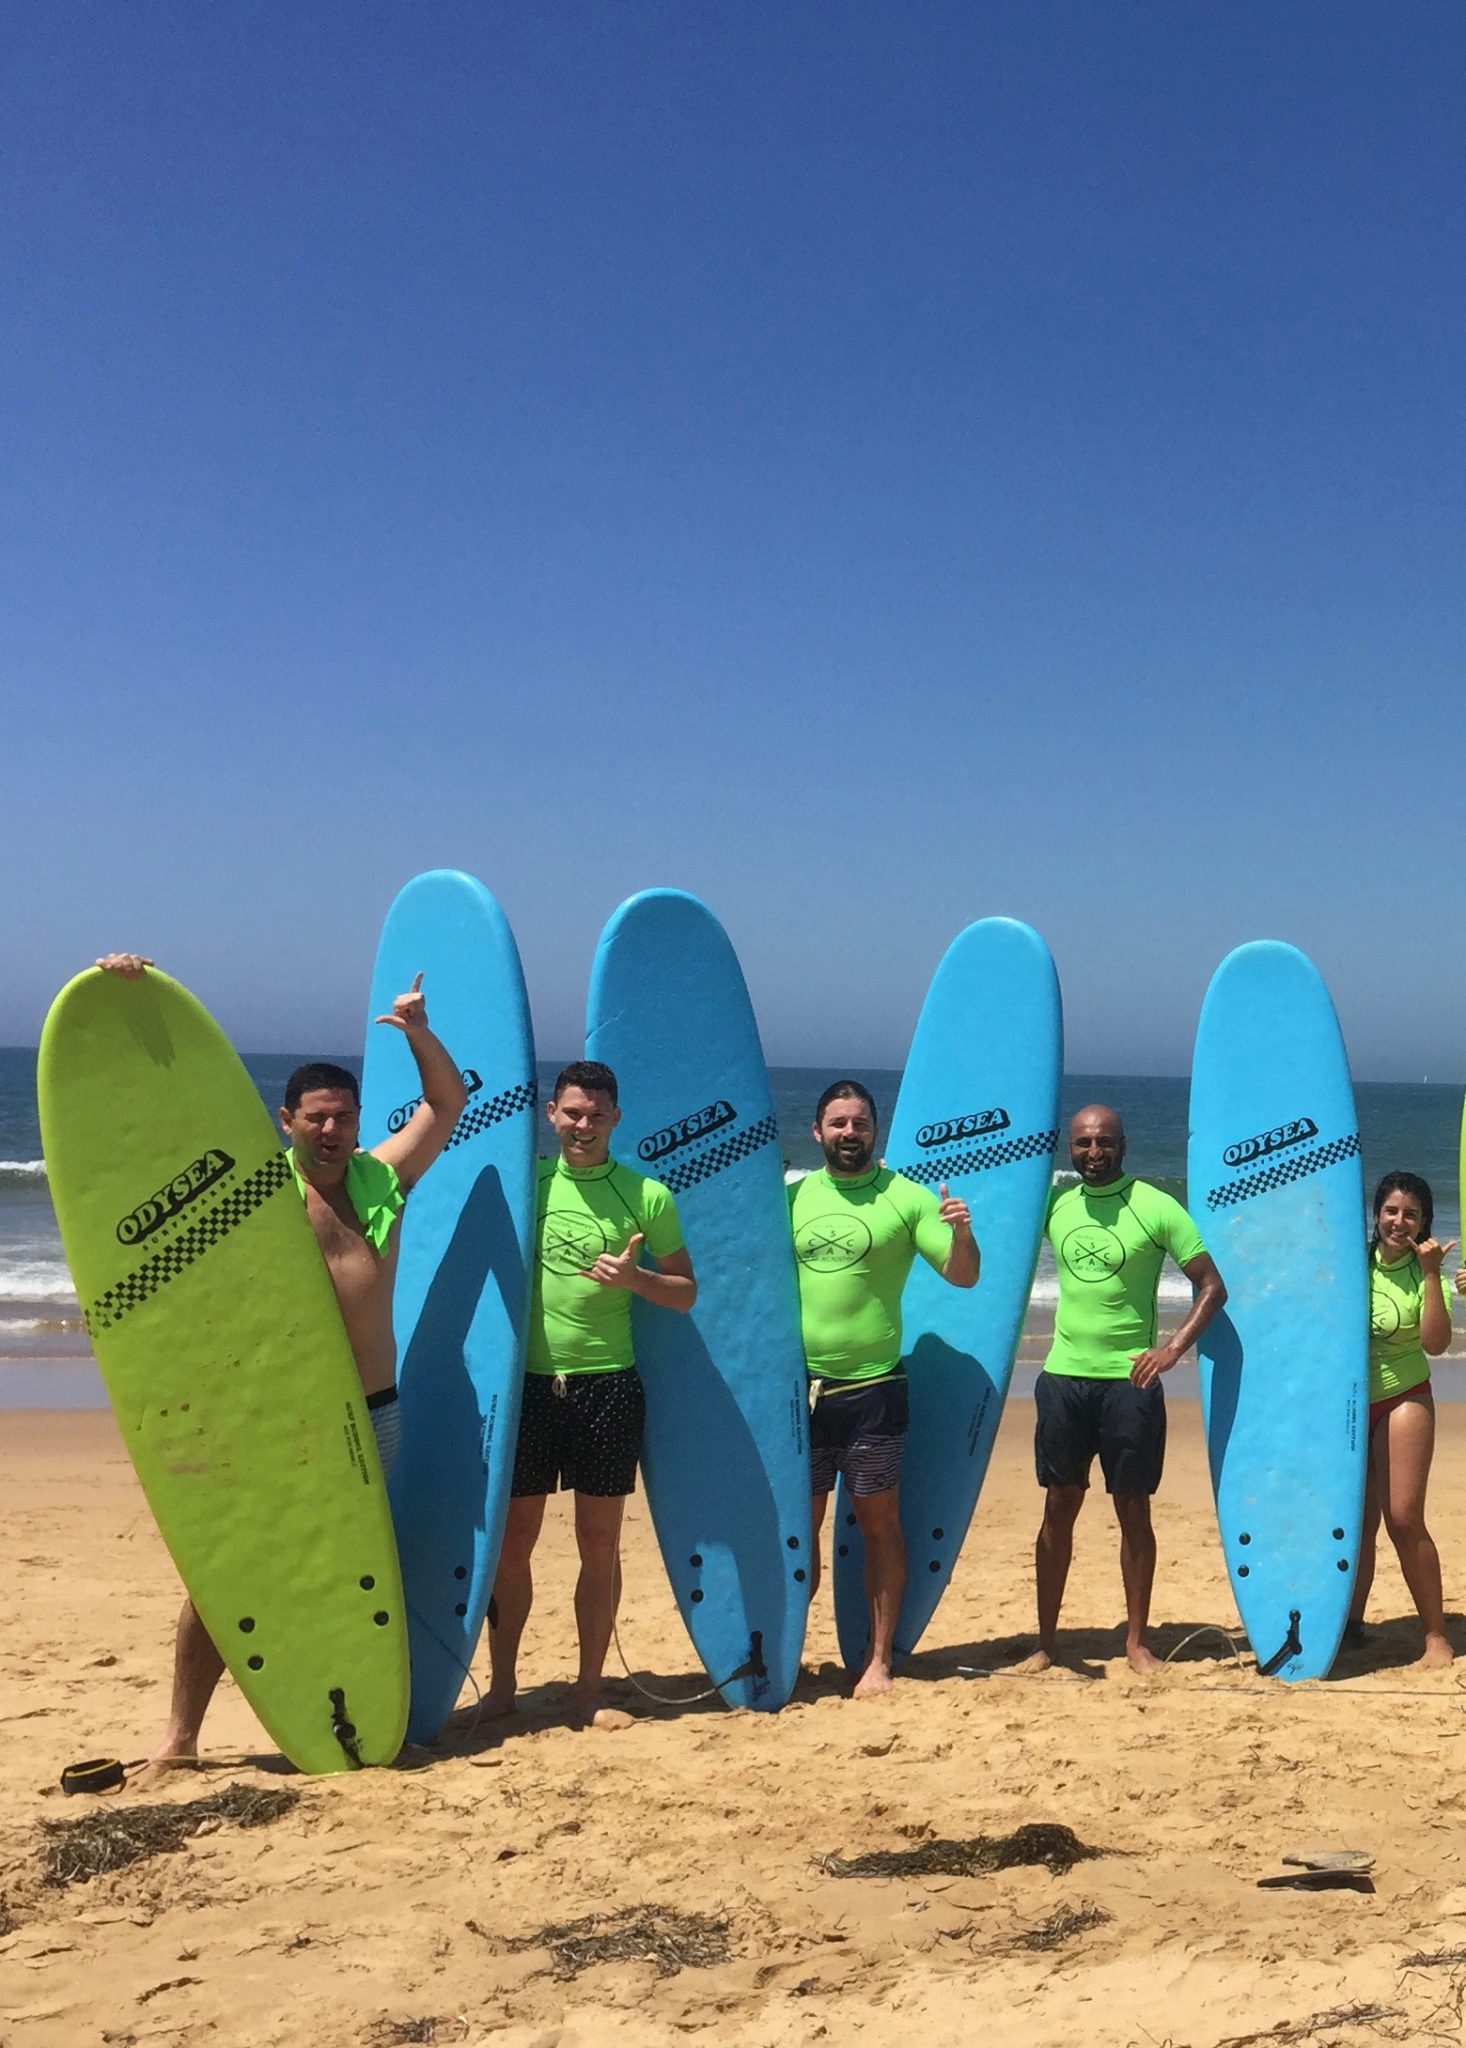 Central Coast Surf Academy